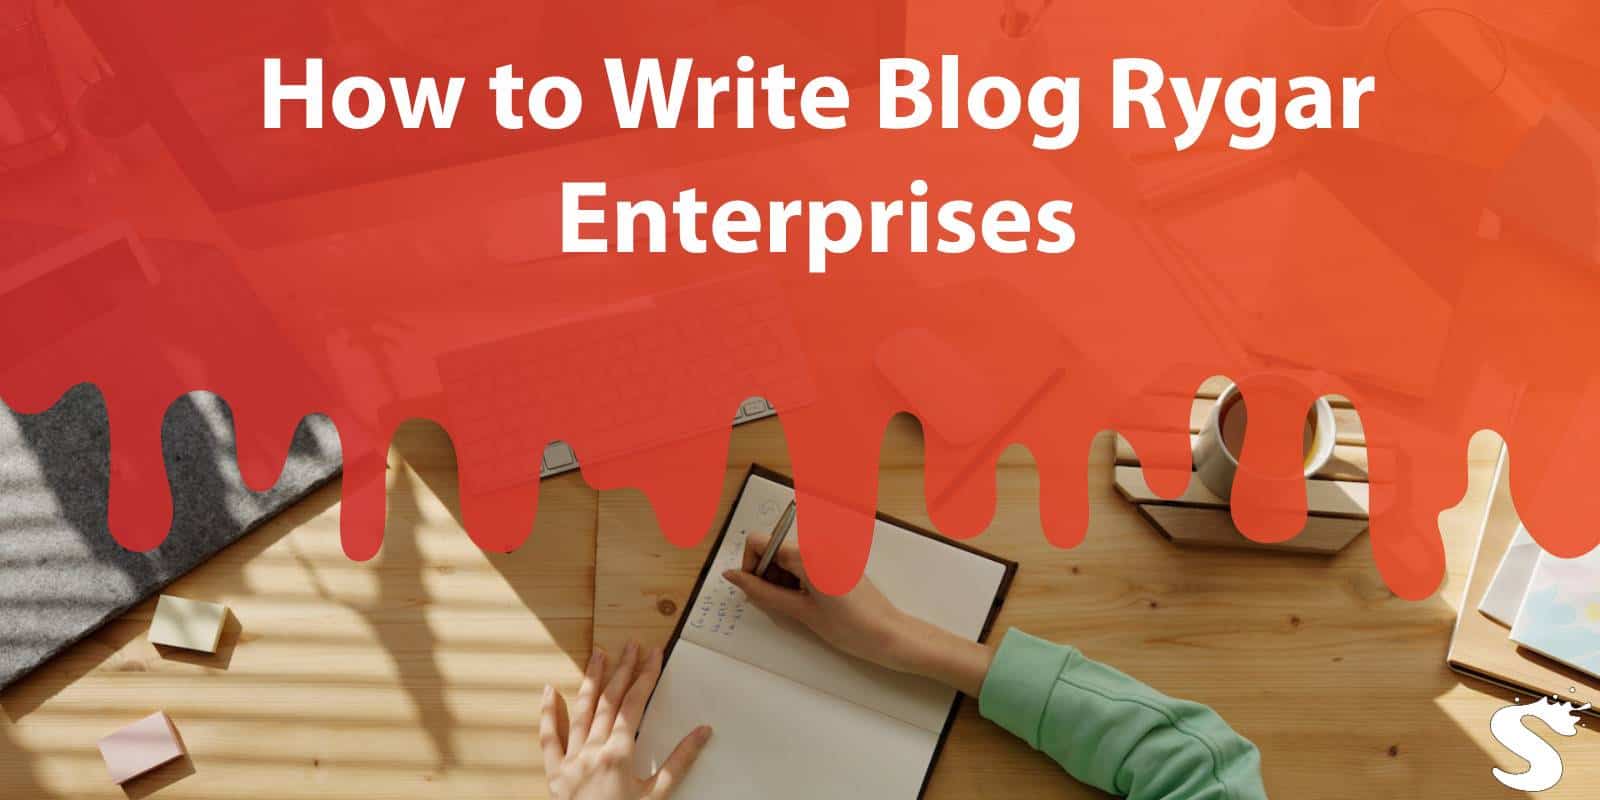 Write Blog Rygar Enterprises